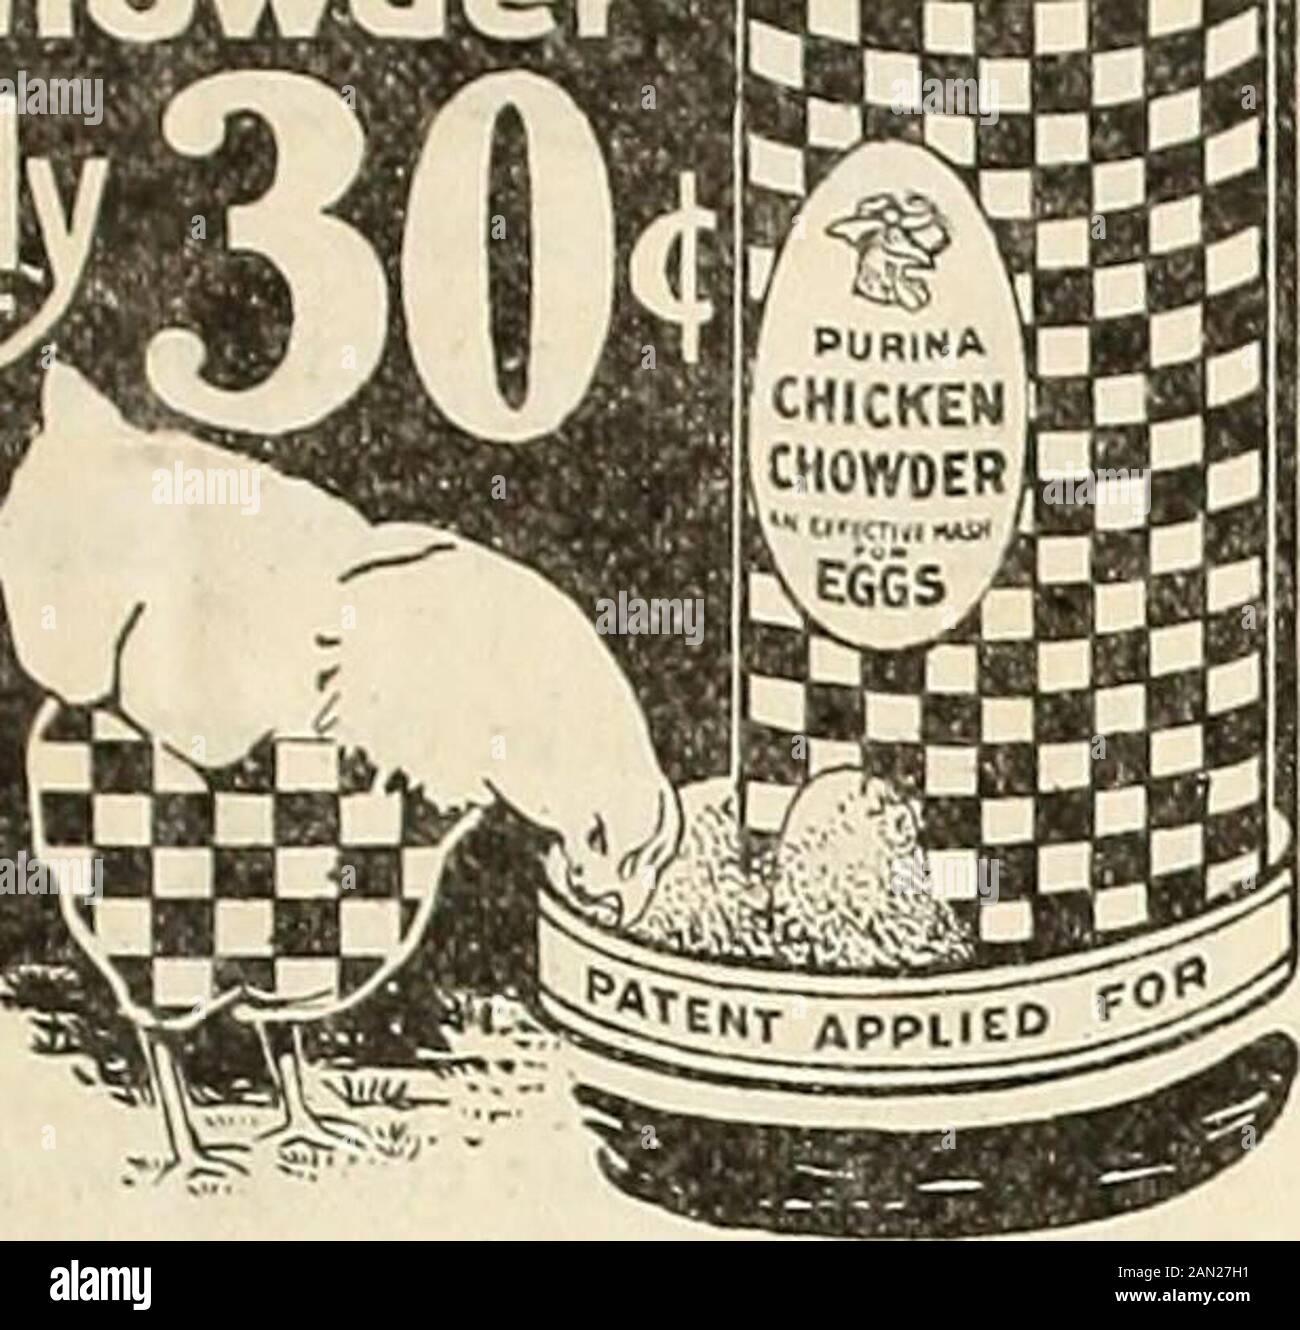 Der Bauernhof - Geflügel. 28 1 •430*. Um Purina ChickenChowder - den großen Ei-produ-Zing Trockenmasch - vorzustellen, gebe ich Ihnen durch Ihren Denier diesen Ser-viceable Metall-Trichter voller Purina Chicken Chowder für nur 30 Cent (30 c). Wenn Huhn Chowderwont Ihre Hennen legen lässt, müssen sie Roster sein. Purina Chicken Chowder Assuresan Fülle von Eiern, weil es ungefähr die Chem-ical Zutaten enthält, die in einem Ei gefunden werden.Es macht fruchtbare Eier zum Schlüpfen.Angebot gemacht östlich der Rocky Mountains, nur über Händler. Wenn Ihr Händlerbetrieb Sie versorgt, schicken Sie uns seinen Namen. Geflügelbuch Kostenlos! Für Ihr Angebot Stockfoto